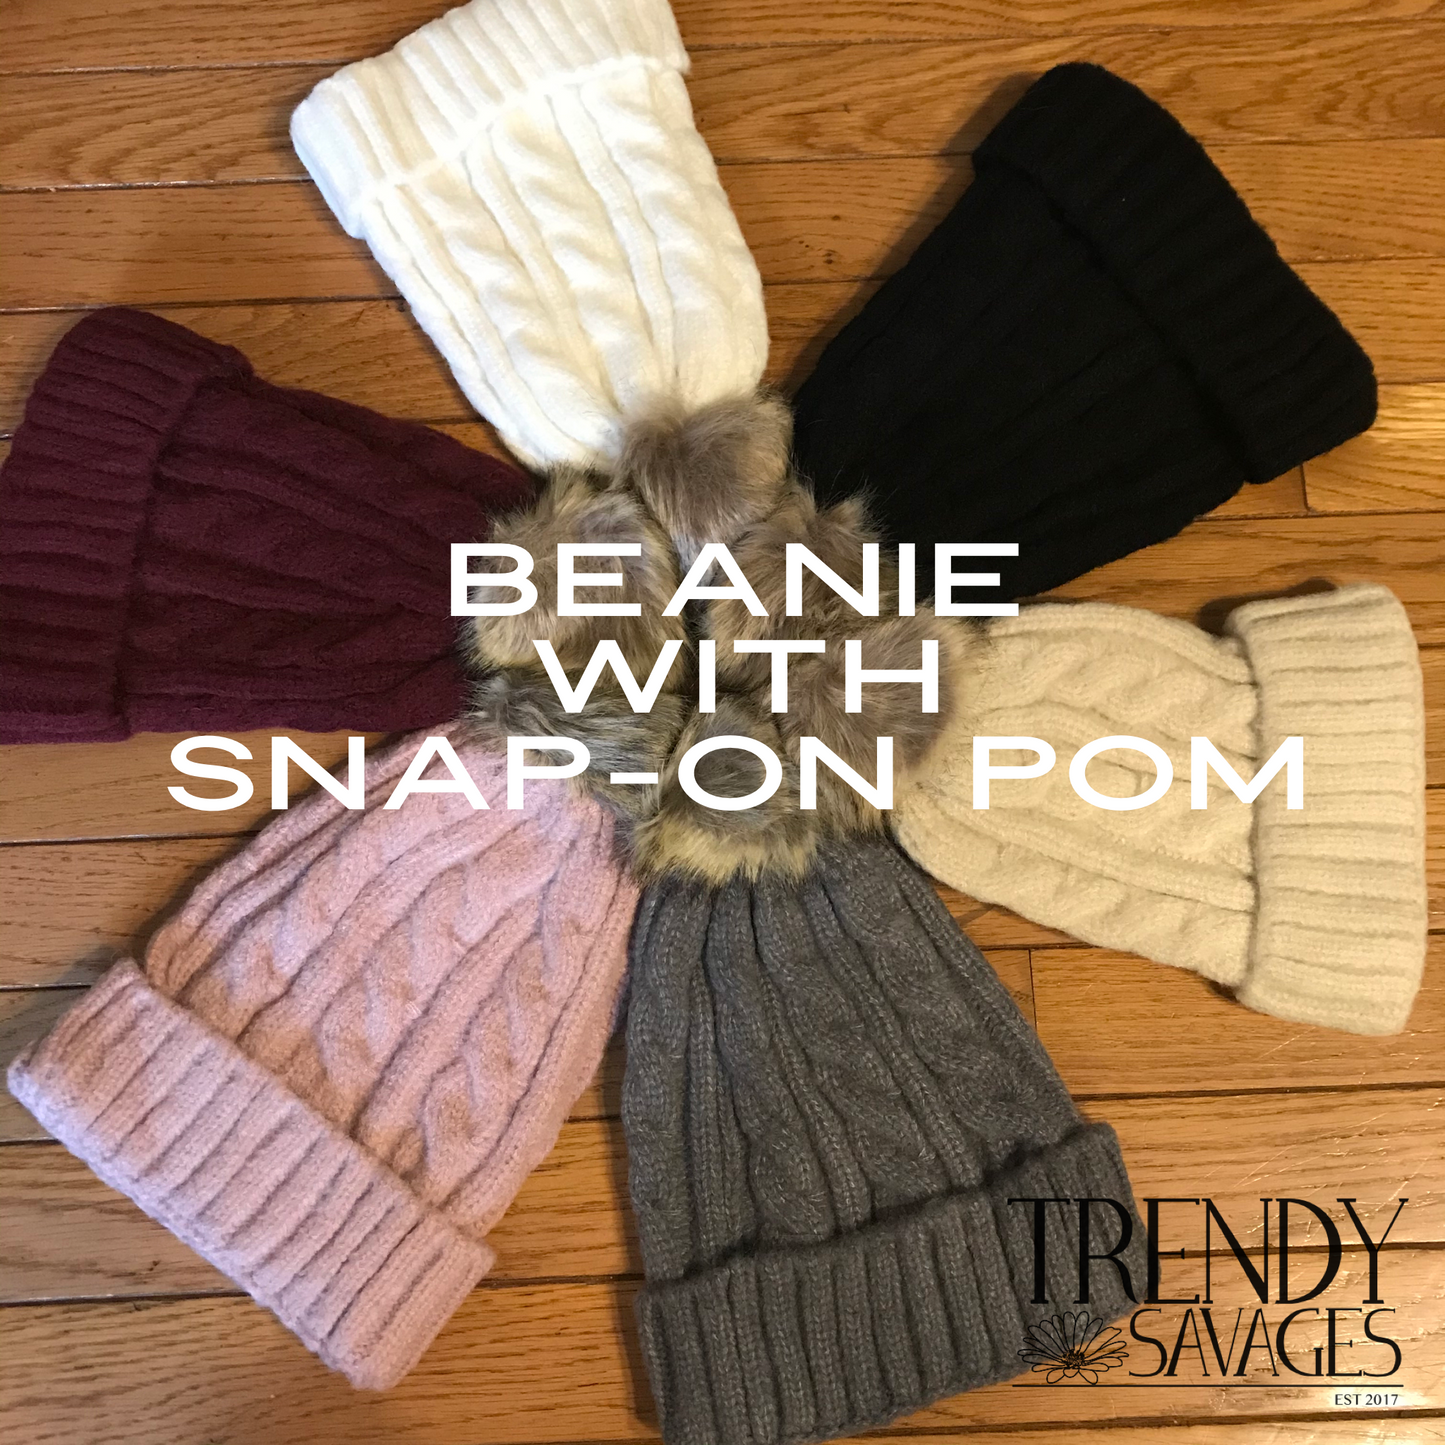 Beanie with Snap-On Pom Pom